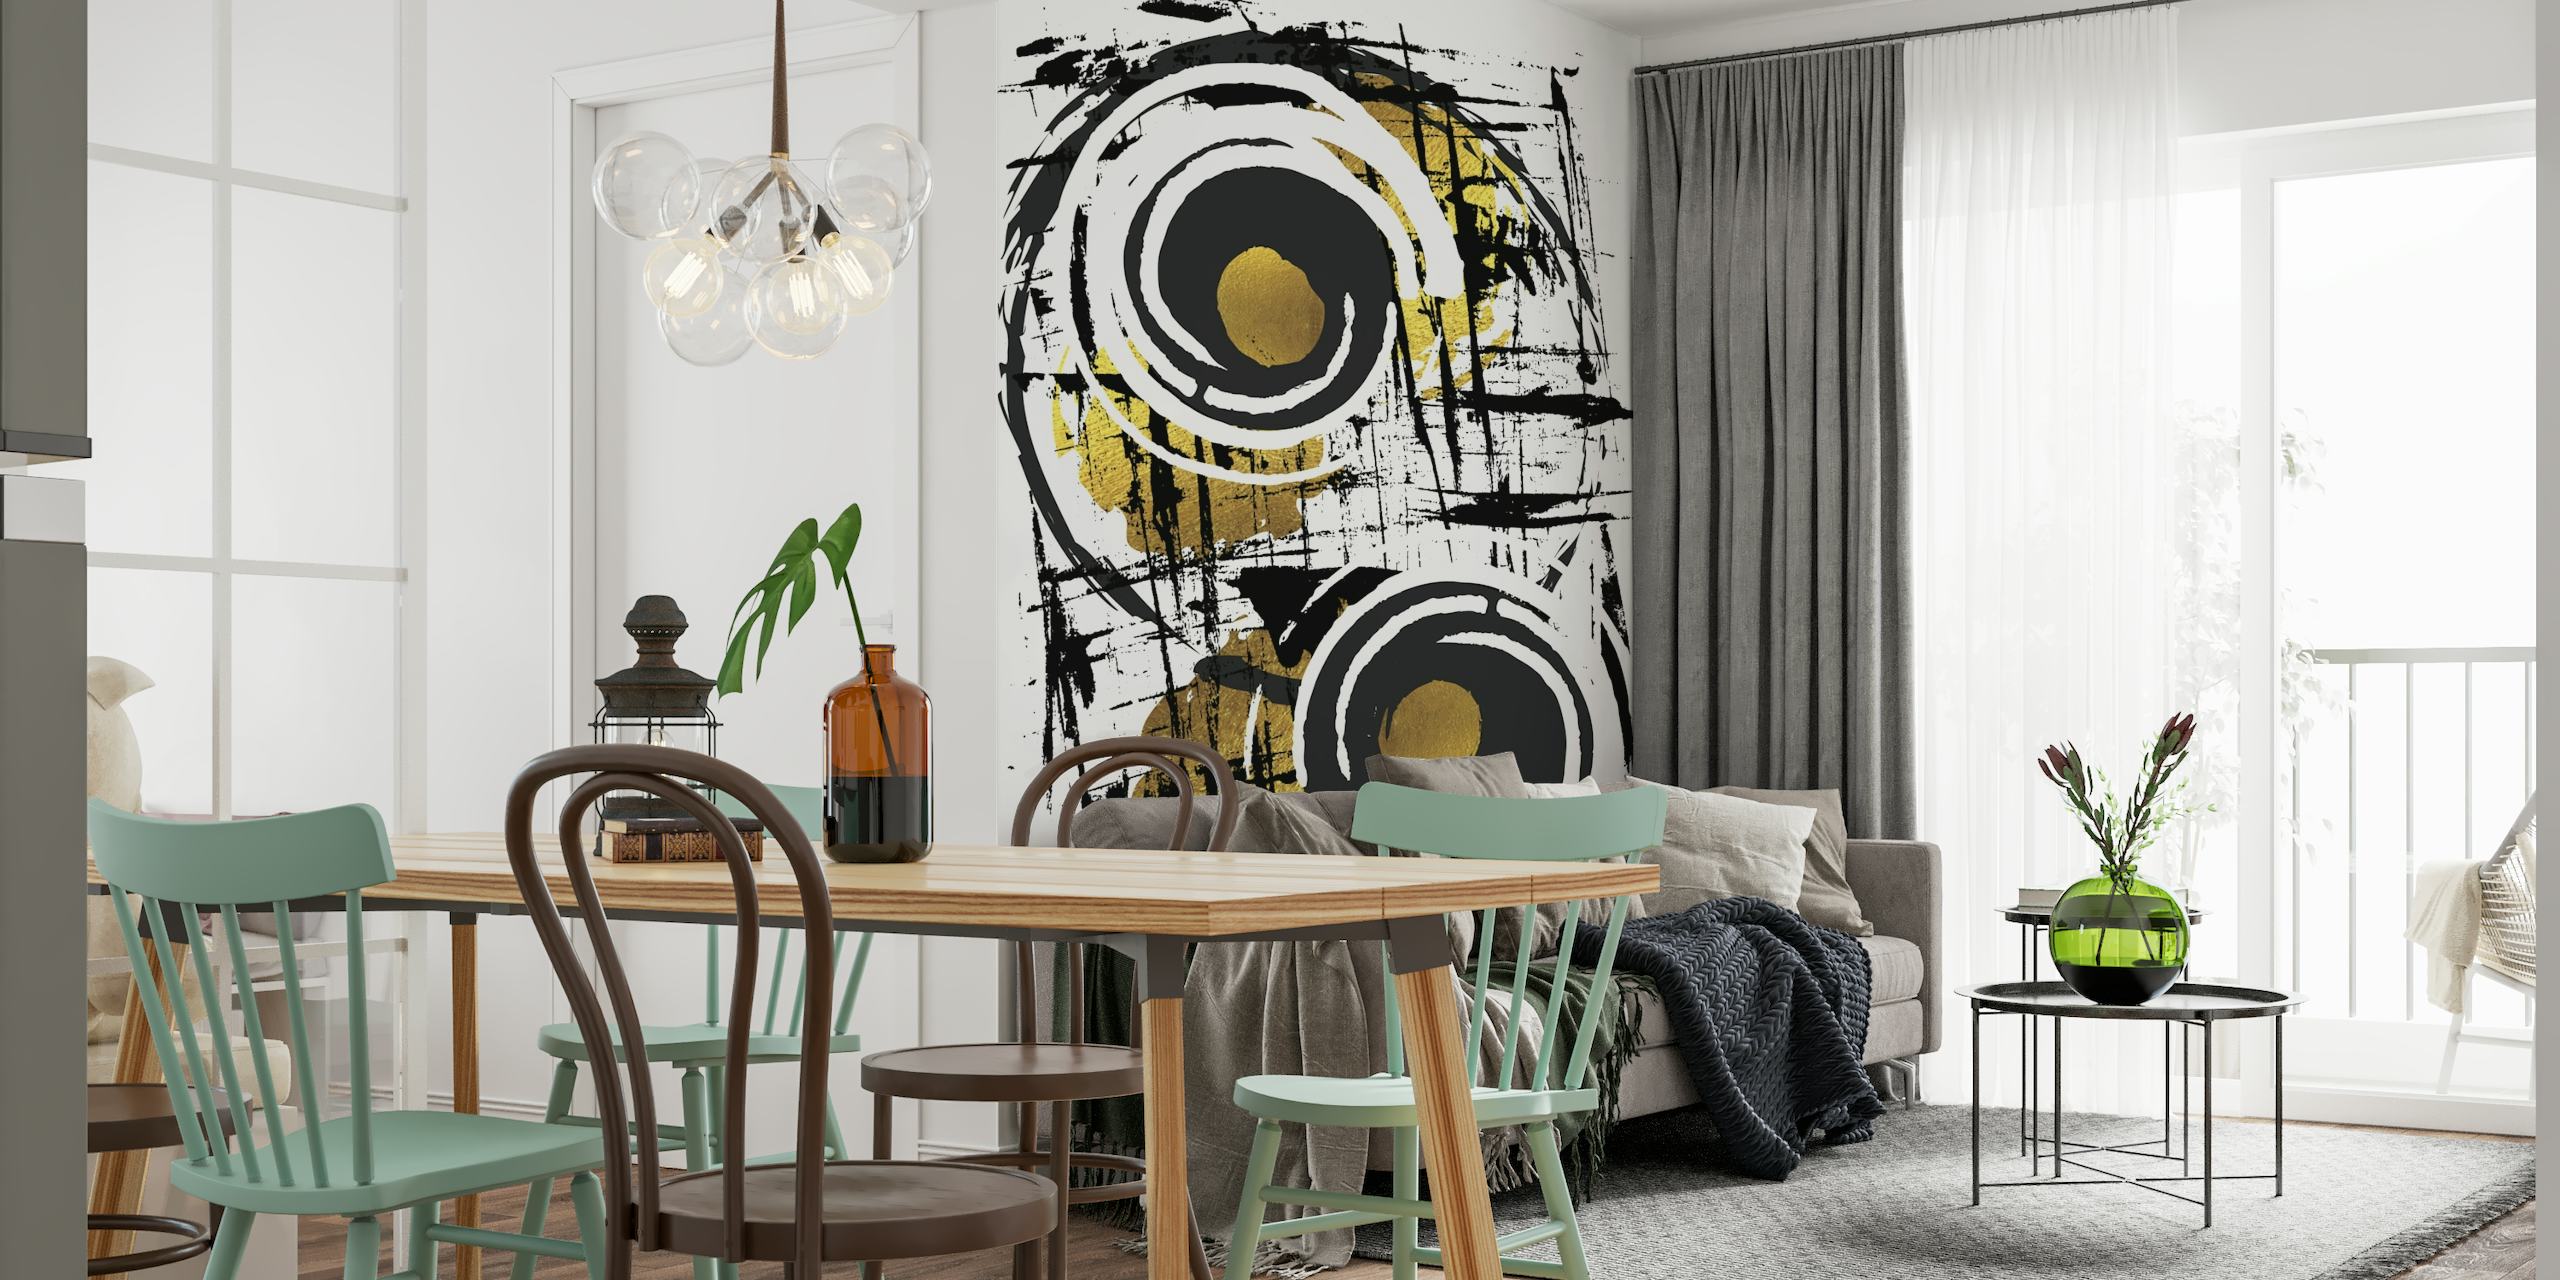 ABSTRAKTE KUNST Hypnotisierendes Wandbild mit schwarzen Pinselstrichen und goldenen Kreisen auf weißem Hintergrund